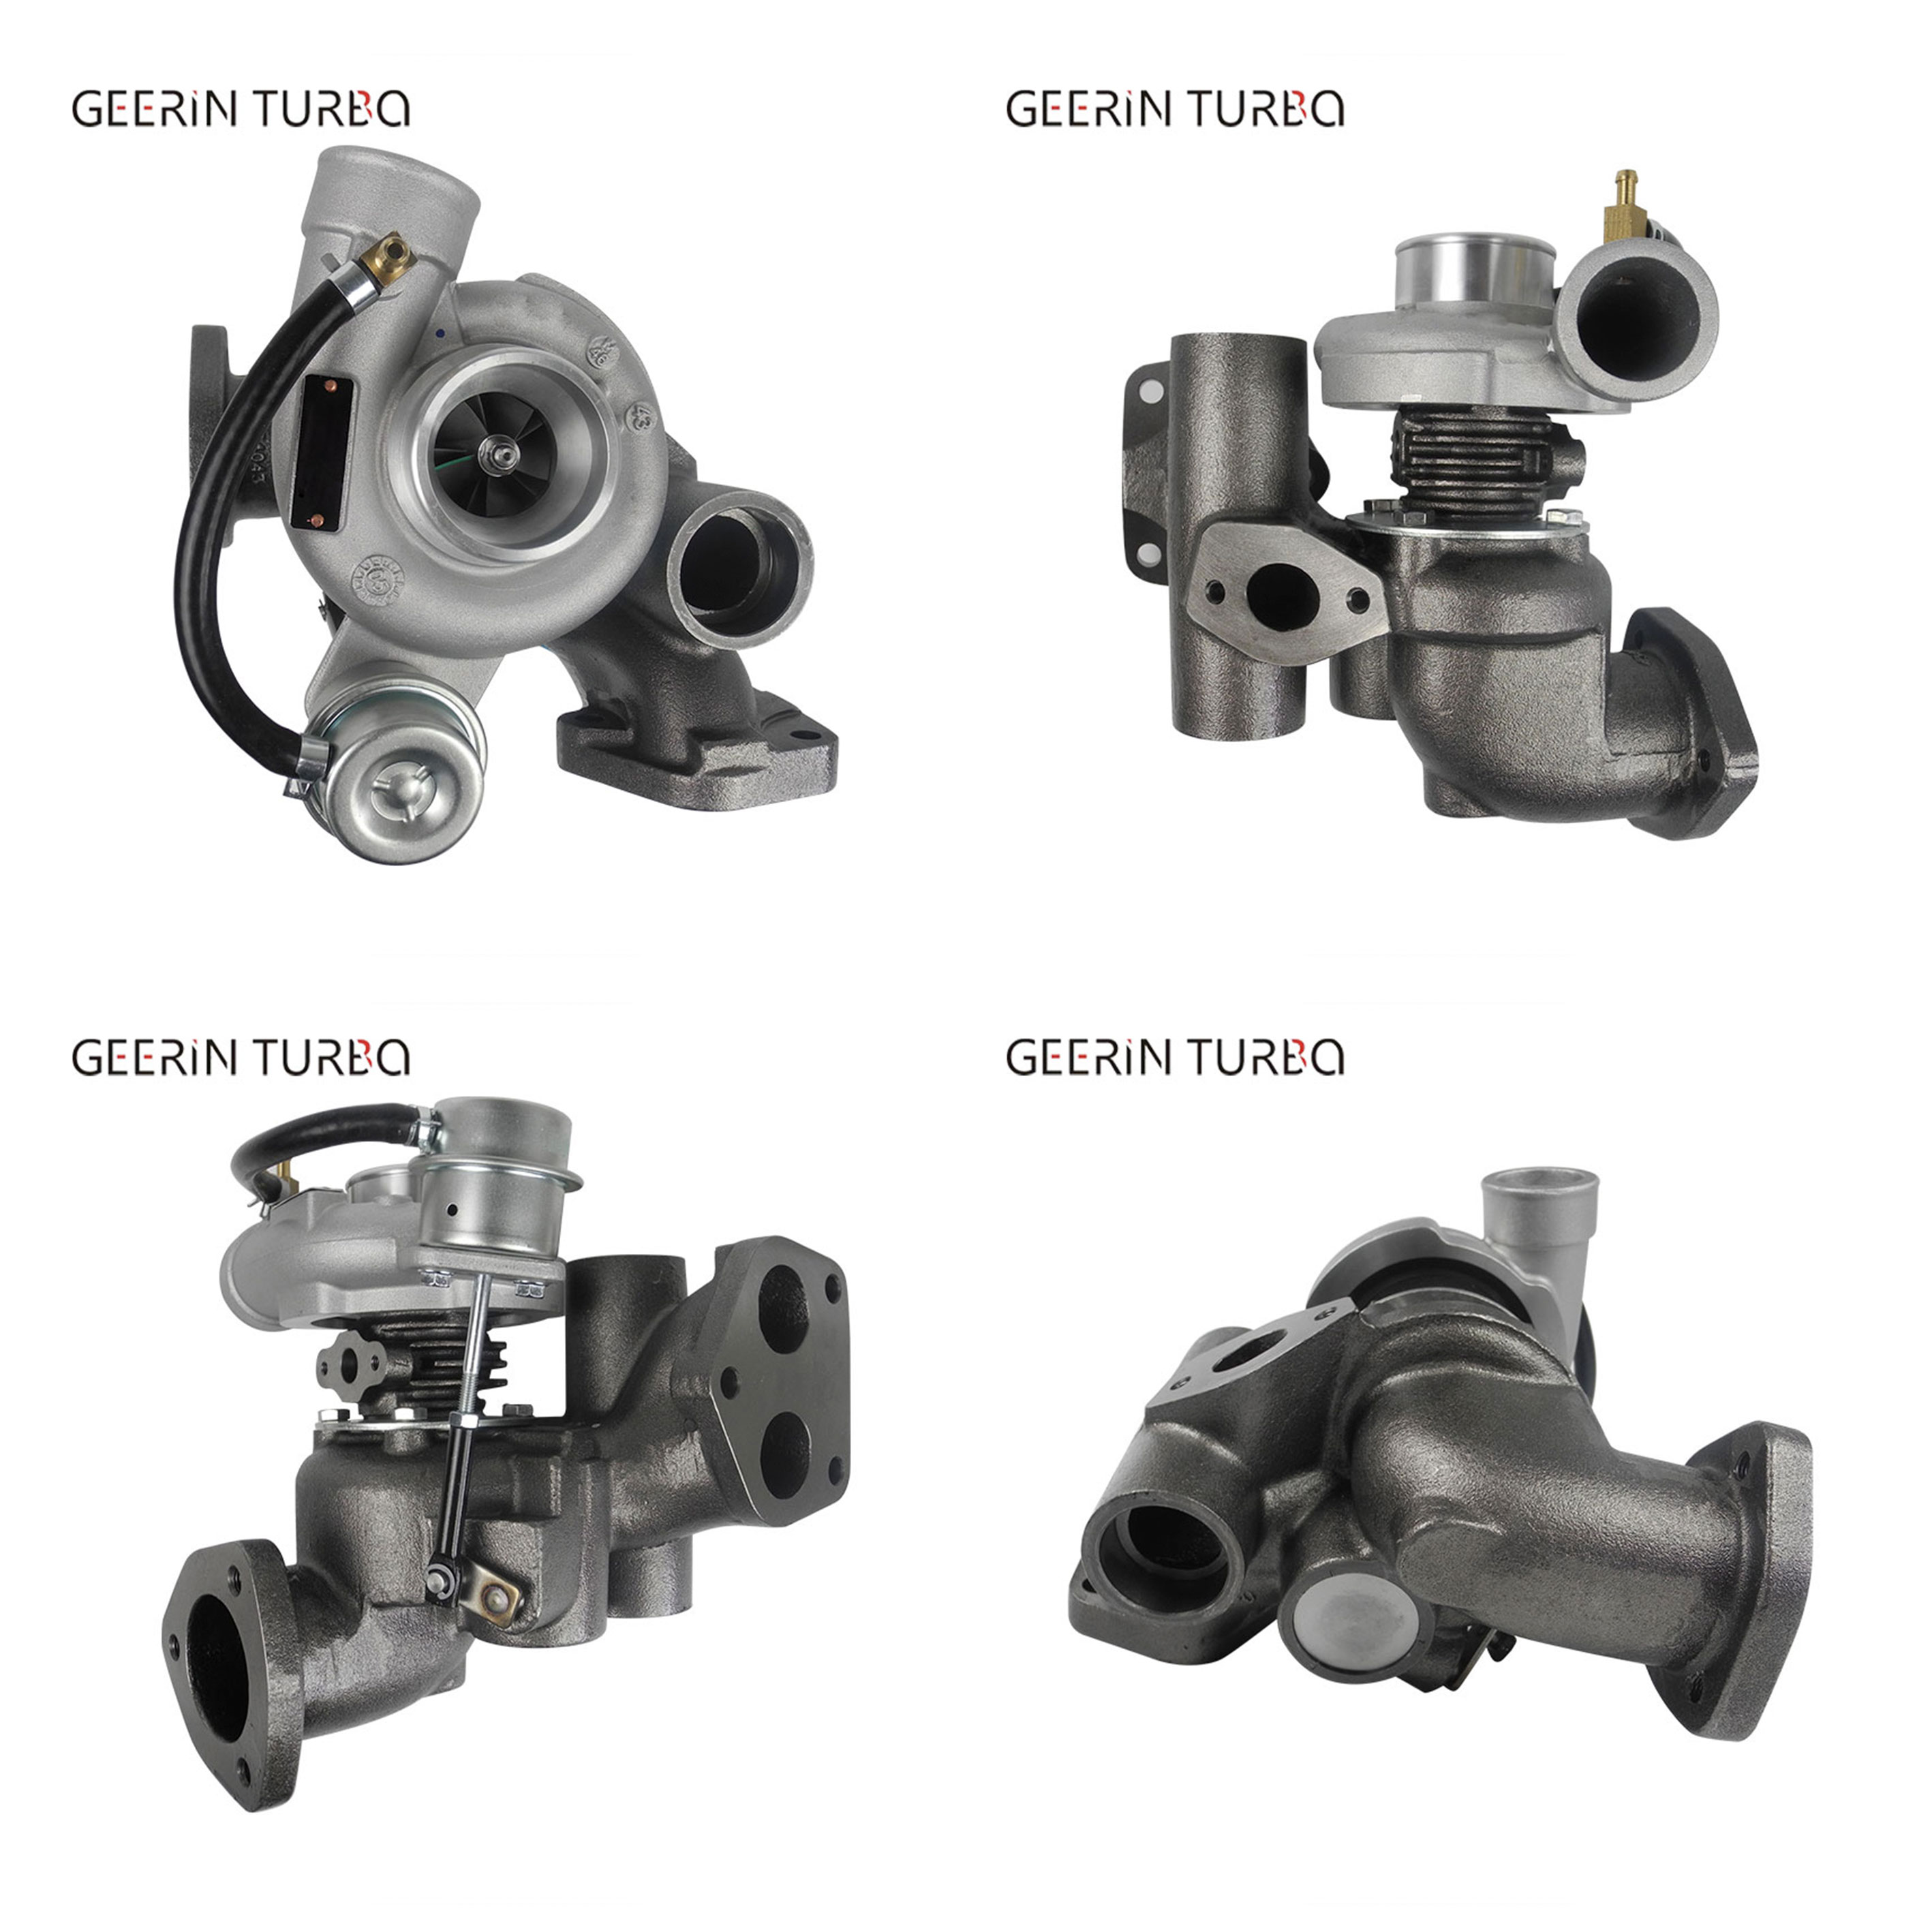 T250-4 452055-5004S Full Turbocharger Turbo Kit For Land-Rover Defender 2.5 TDI Factory